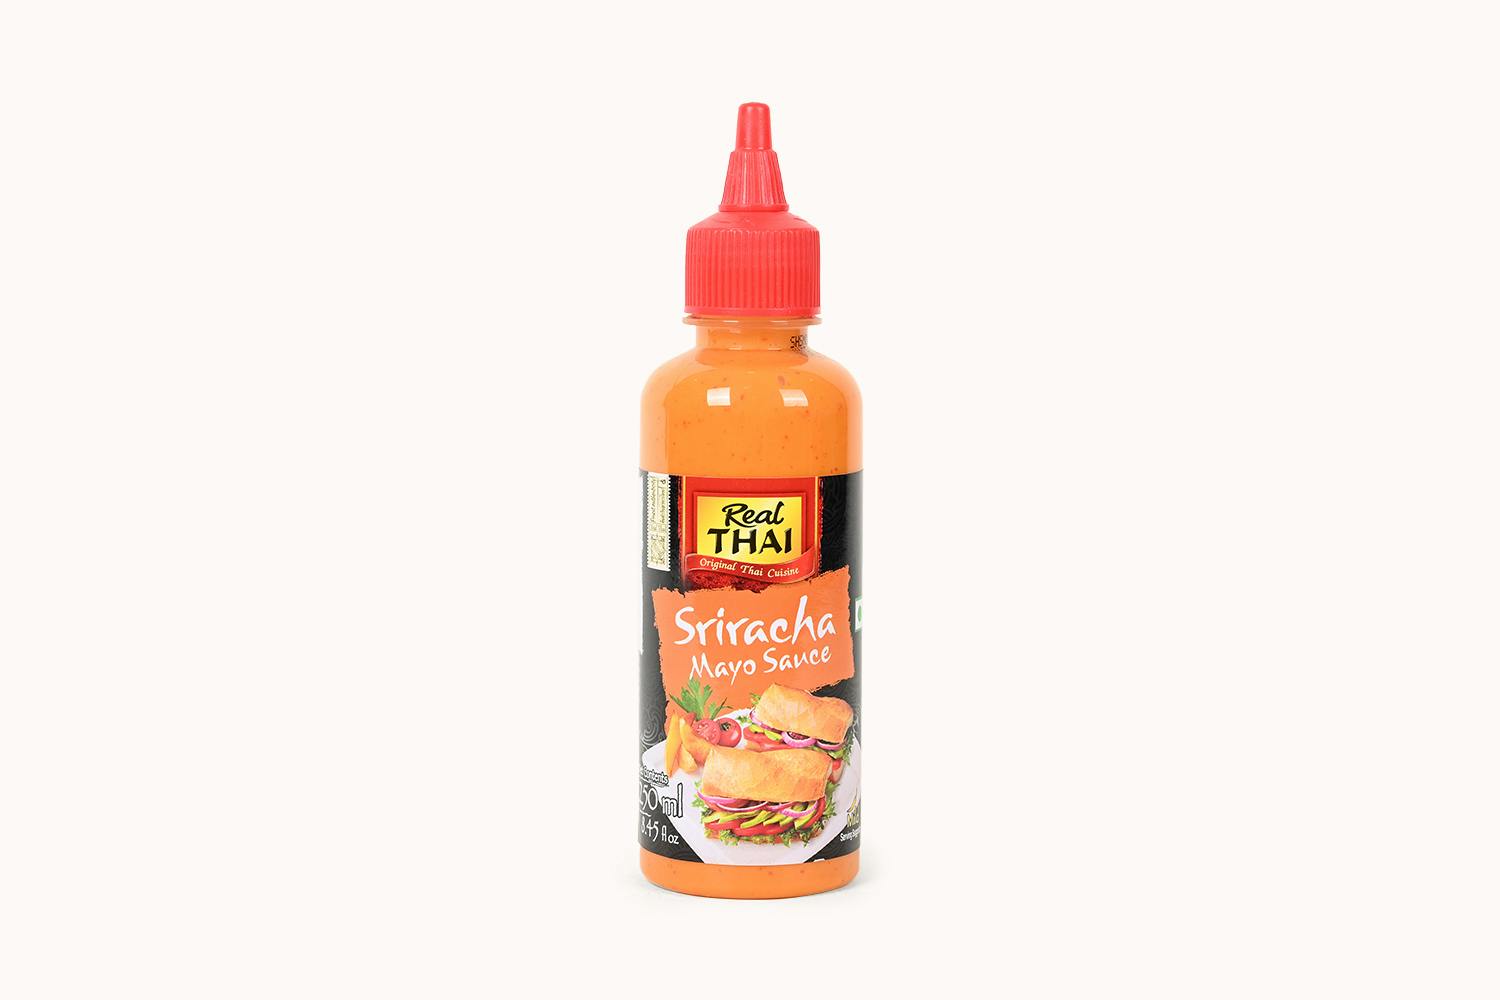 Real Thai Sriracha Mayo Sauce